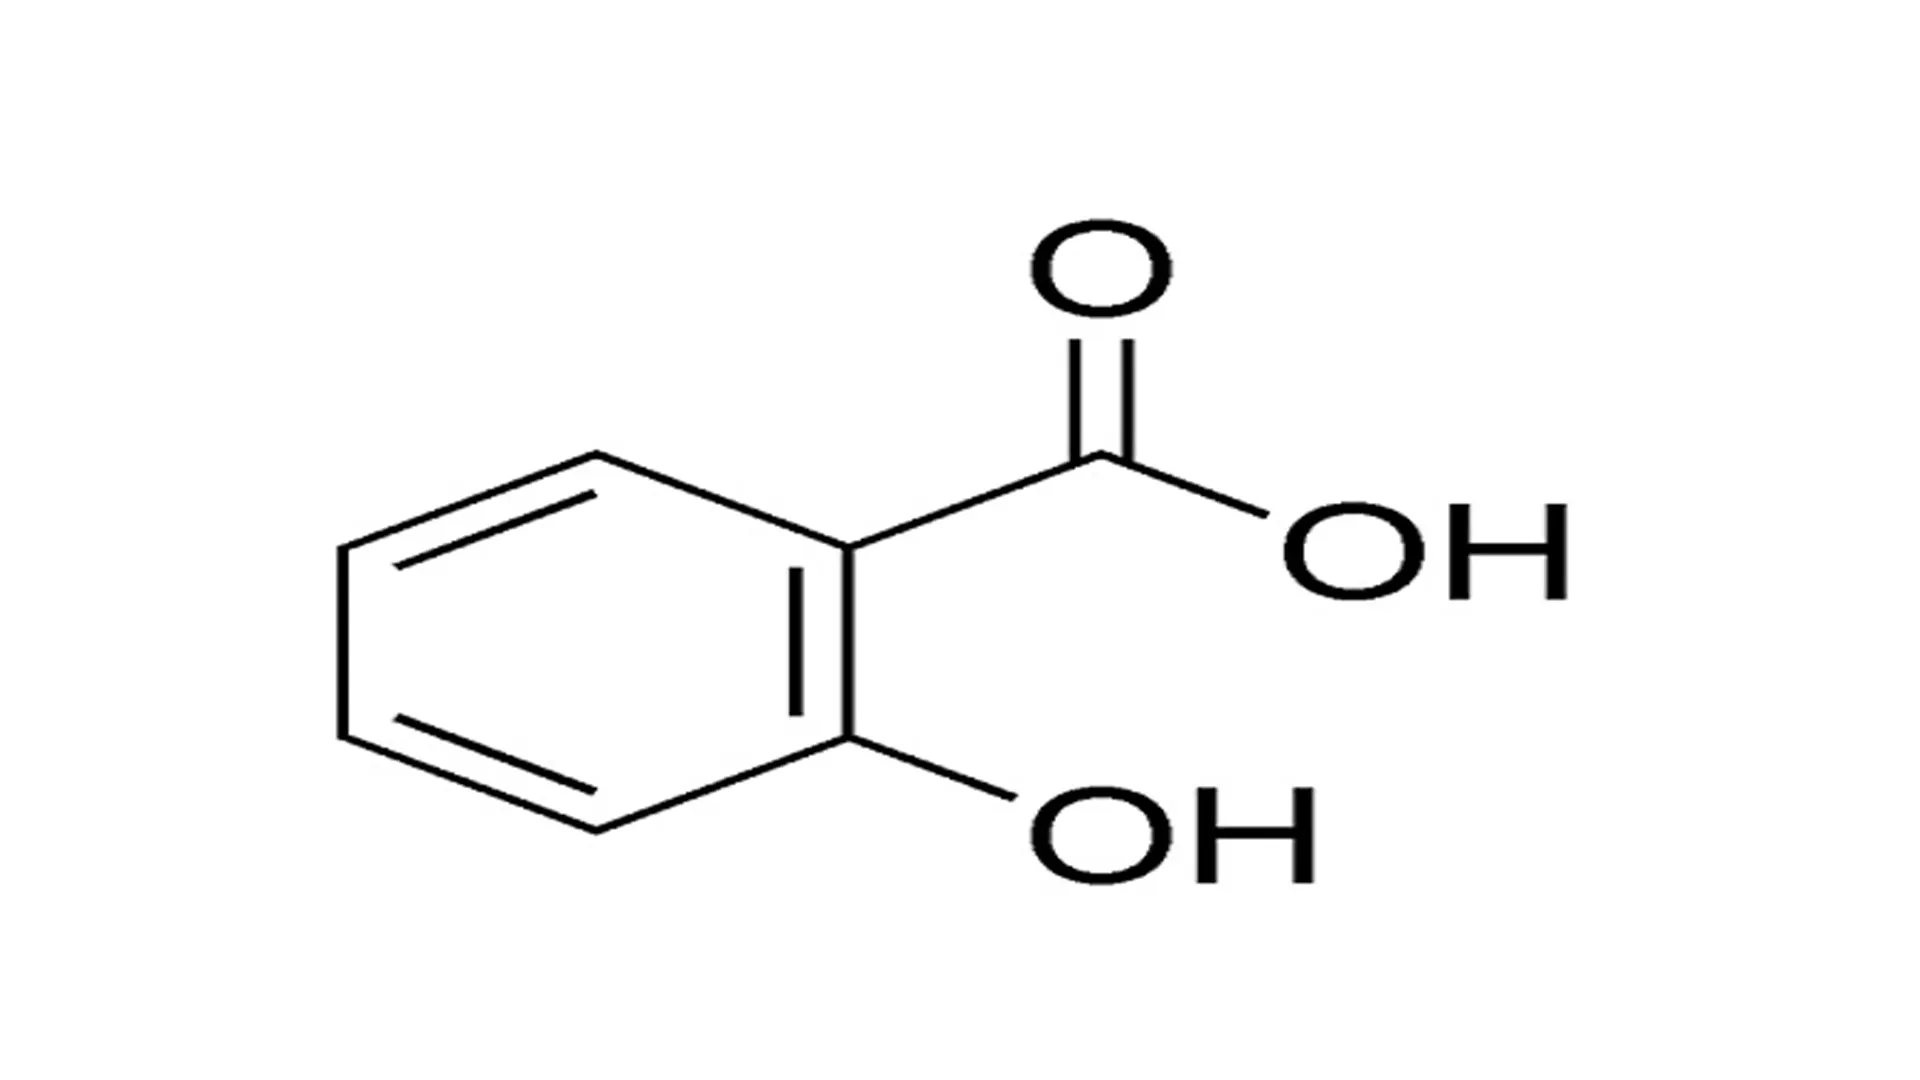 سالسیلیک اسید موجود در سرم ویتامین سی لاروش پوزای - گالری لیلیوم